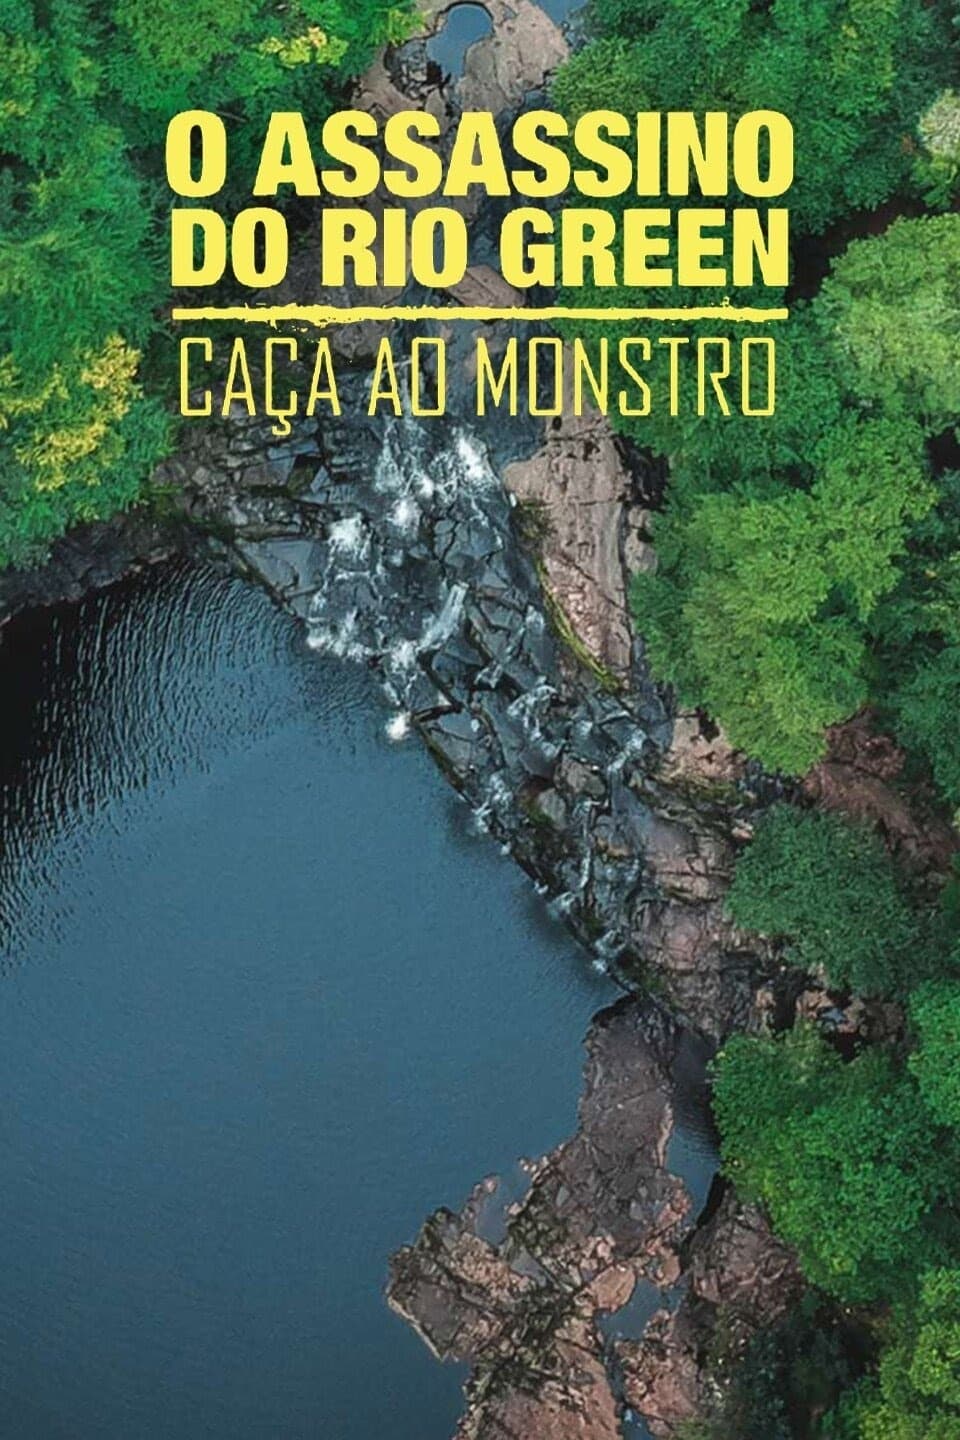 O Assassino do Rio Green: Caça Ao Monstro